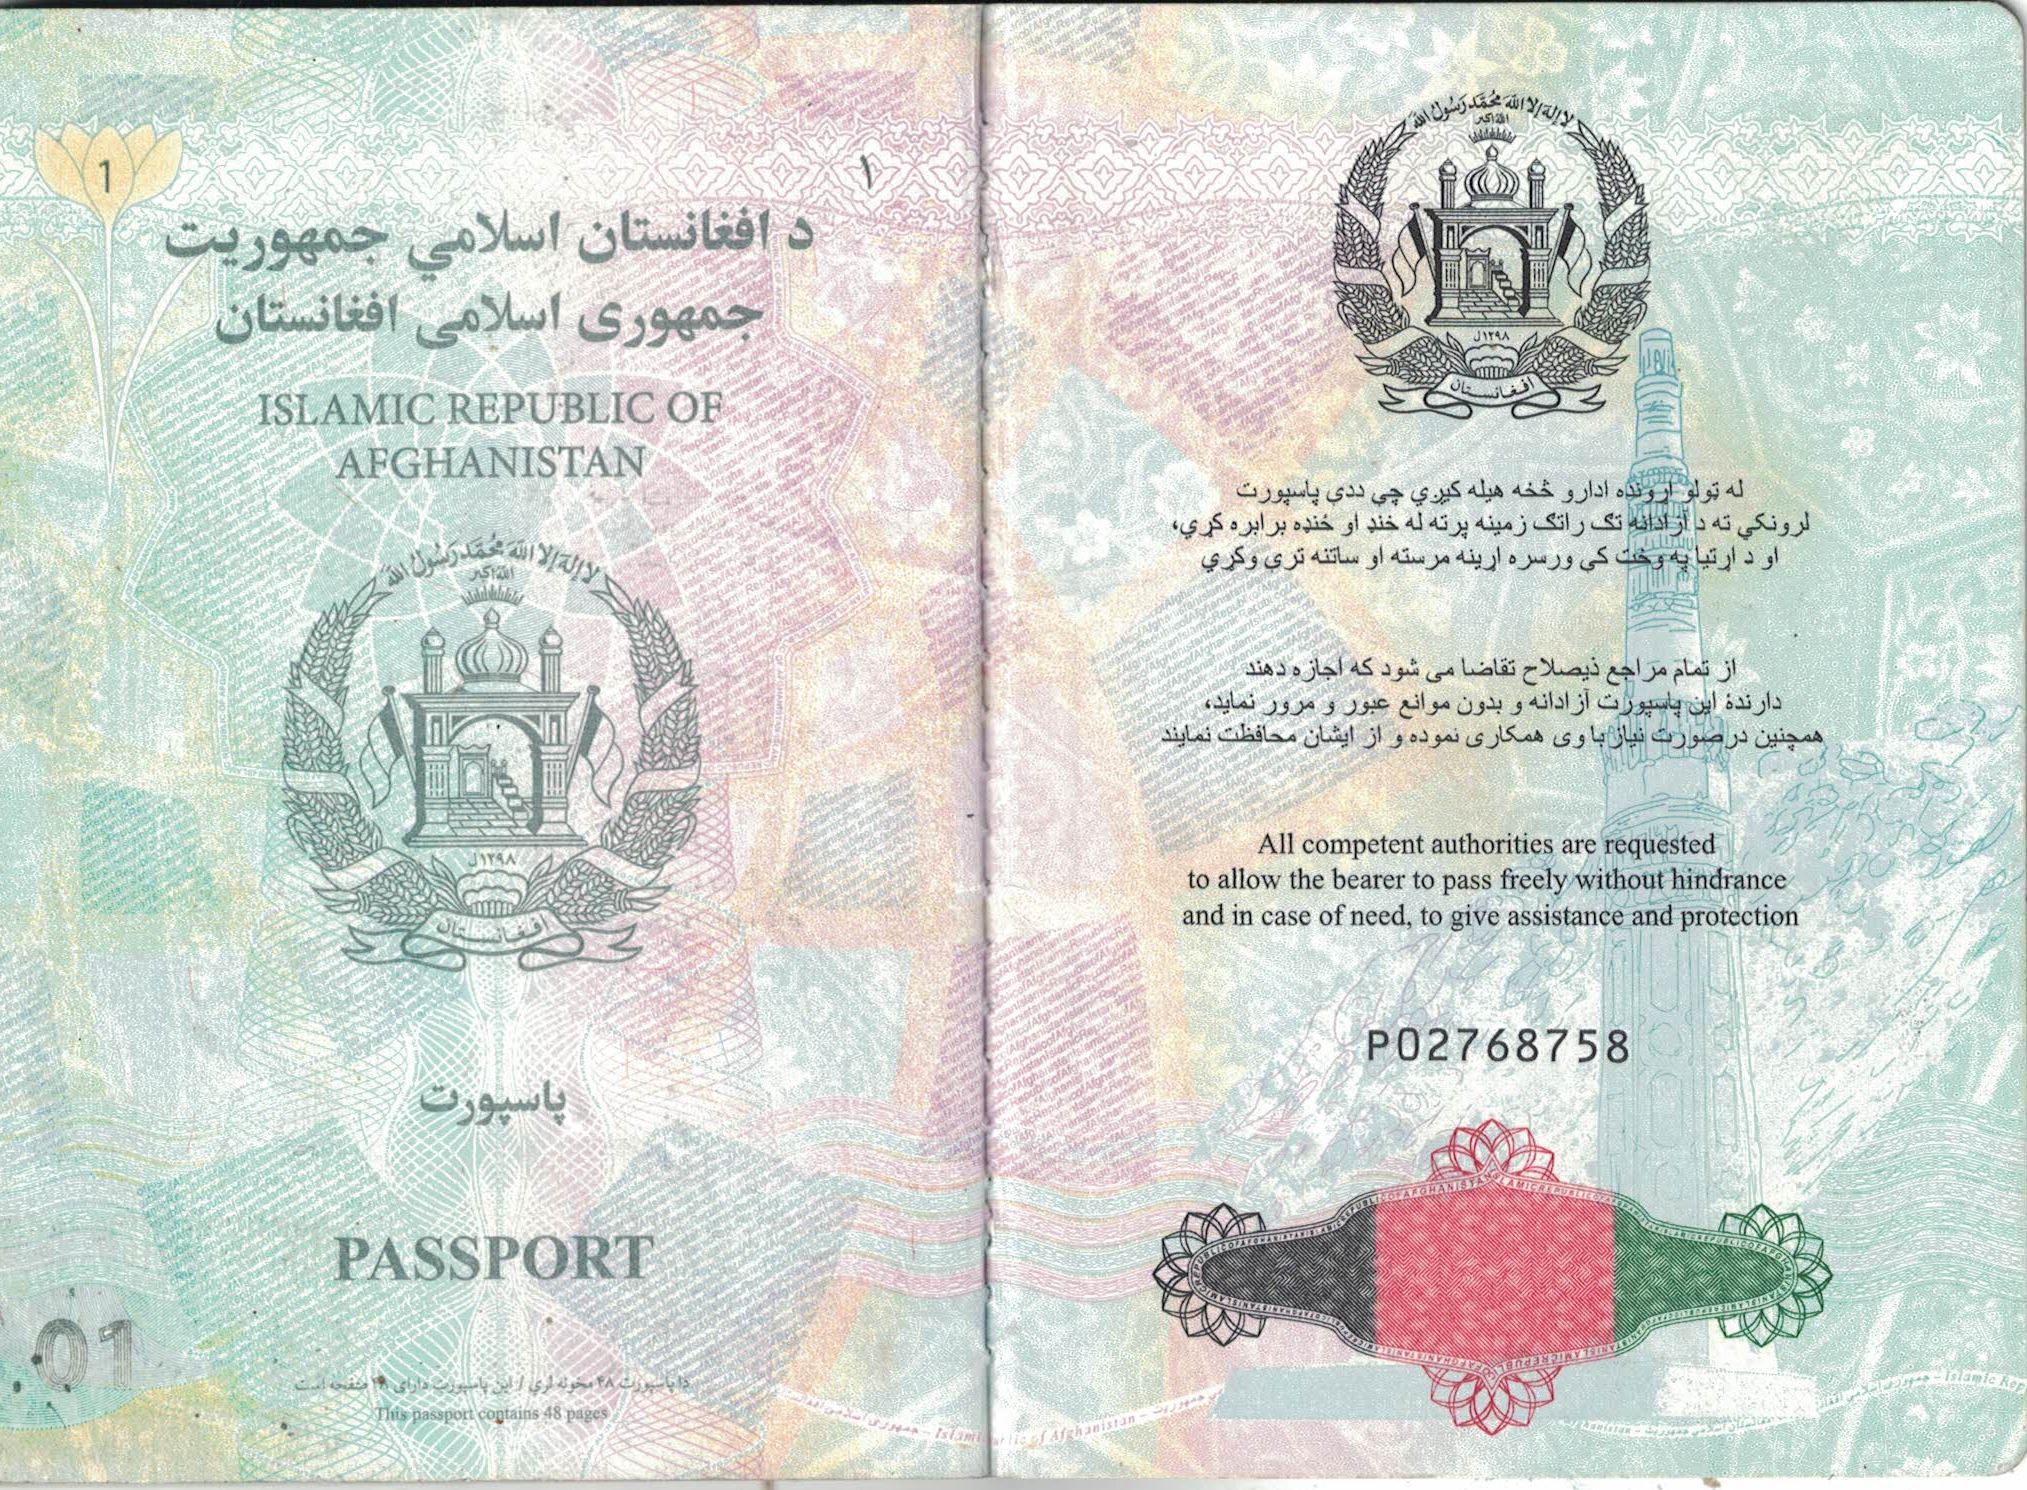 Как правильно перевести афганский паспорт